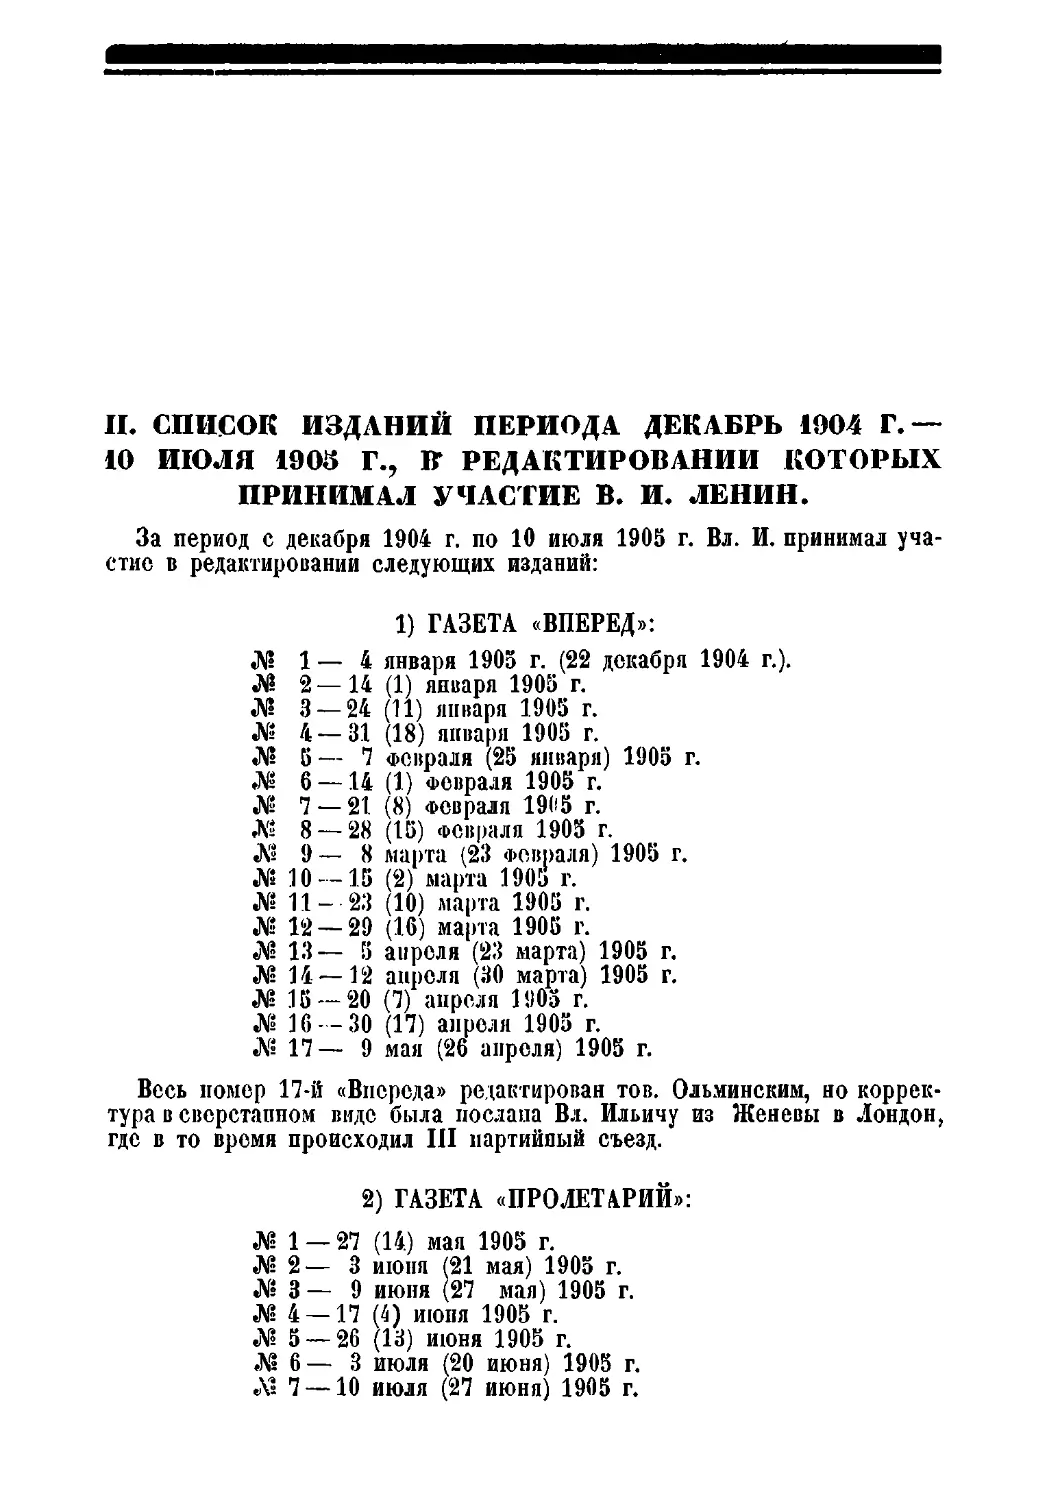 II. Список изданий периода декабрь 1904 г. — 10 июля 1905 г., в редактировании которых принимал участие В. И. Ленин